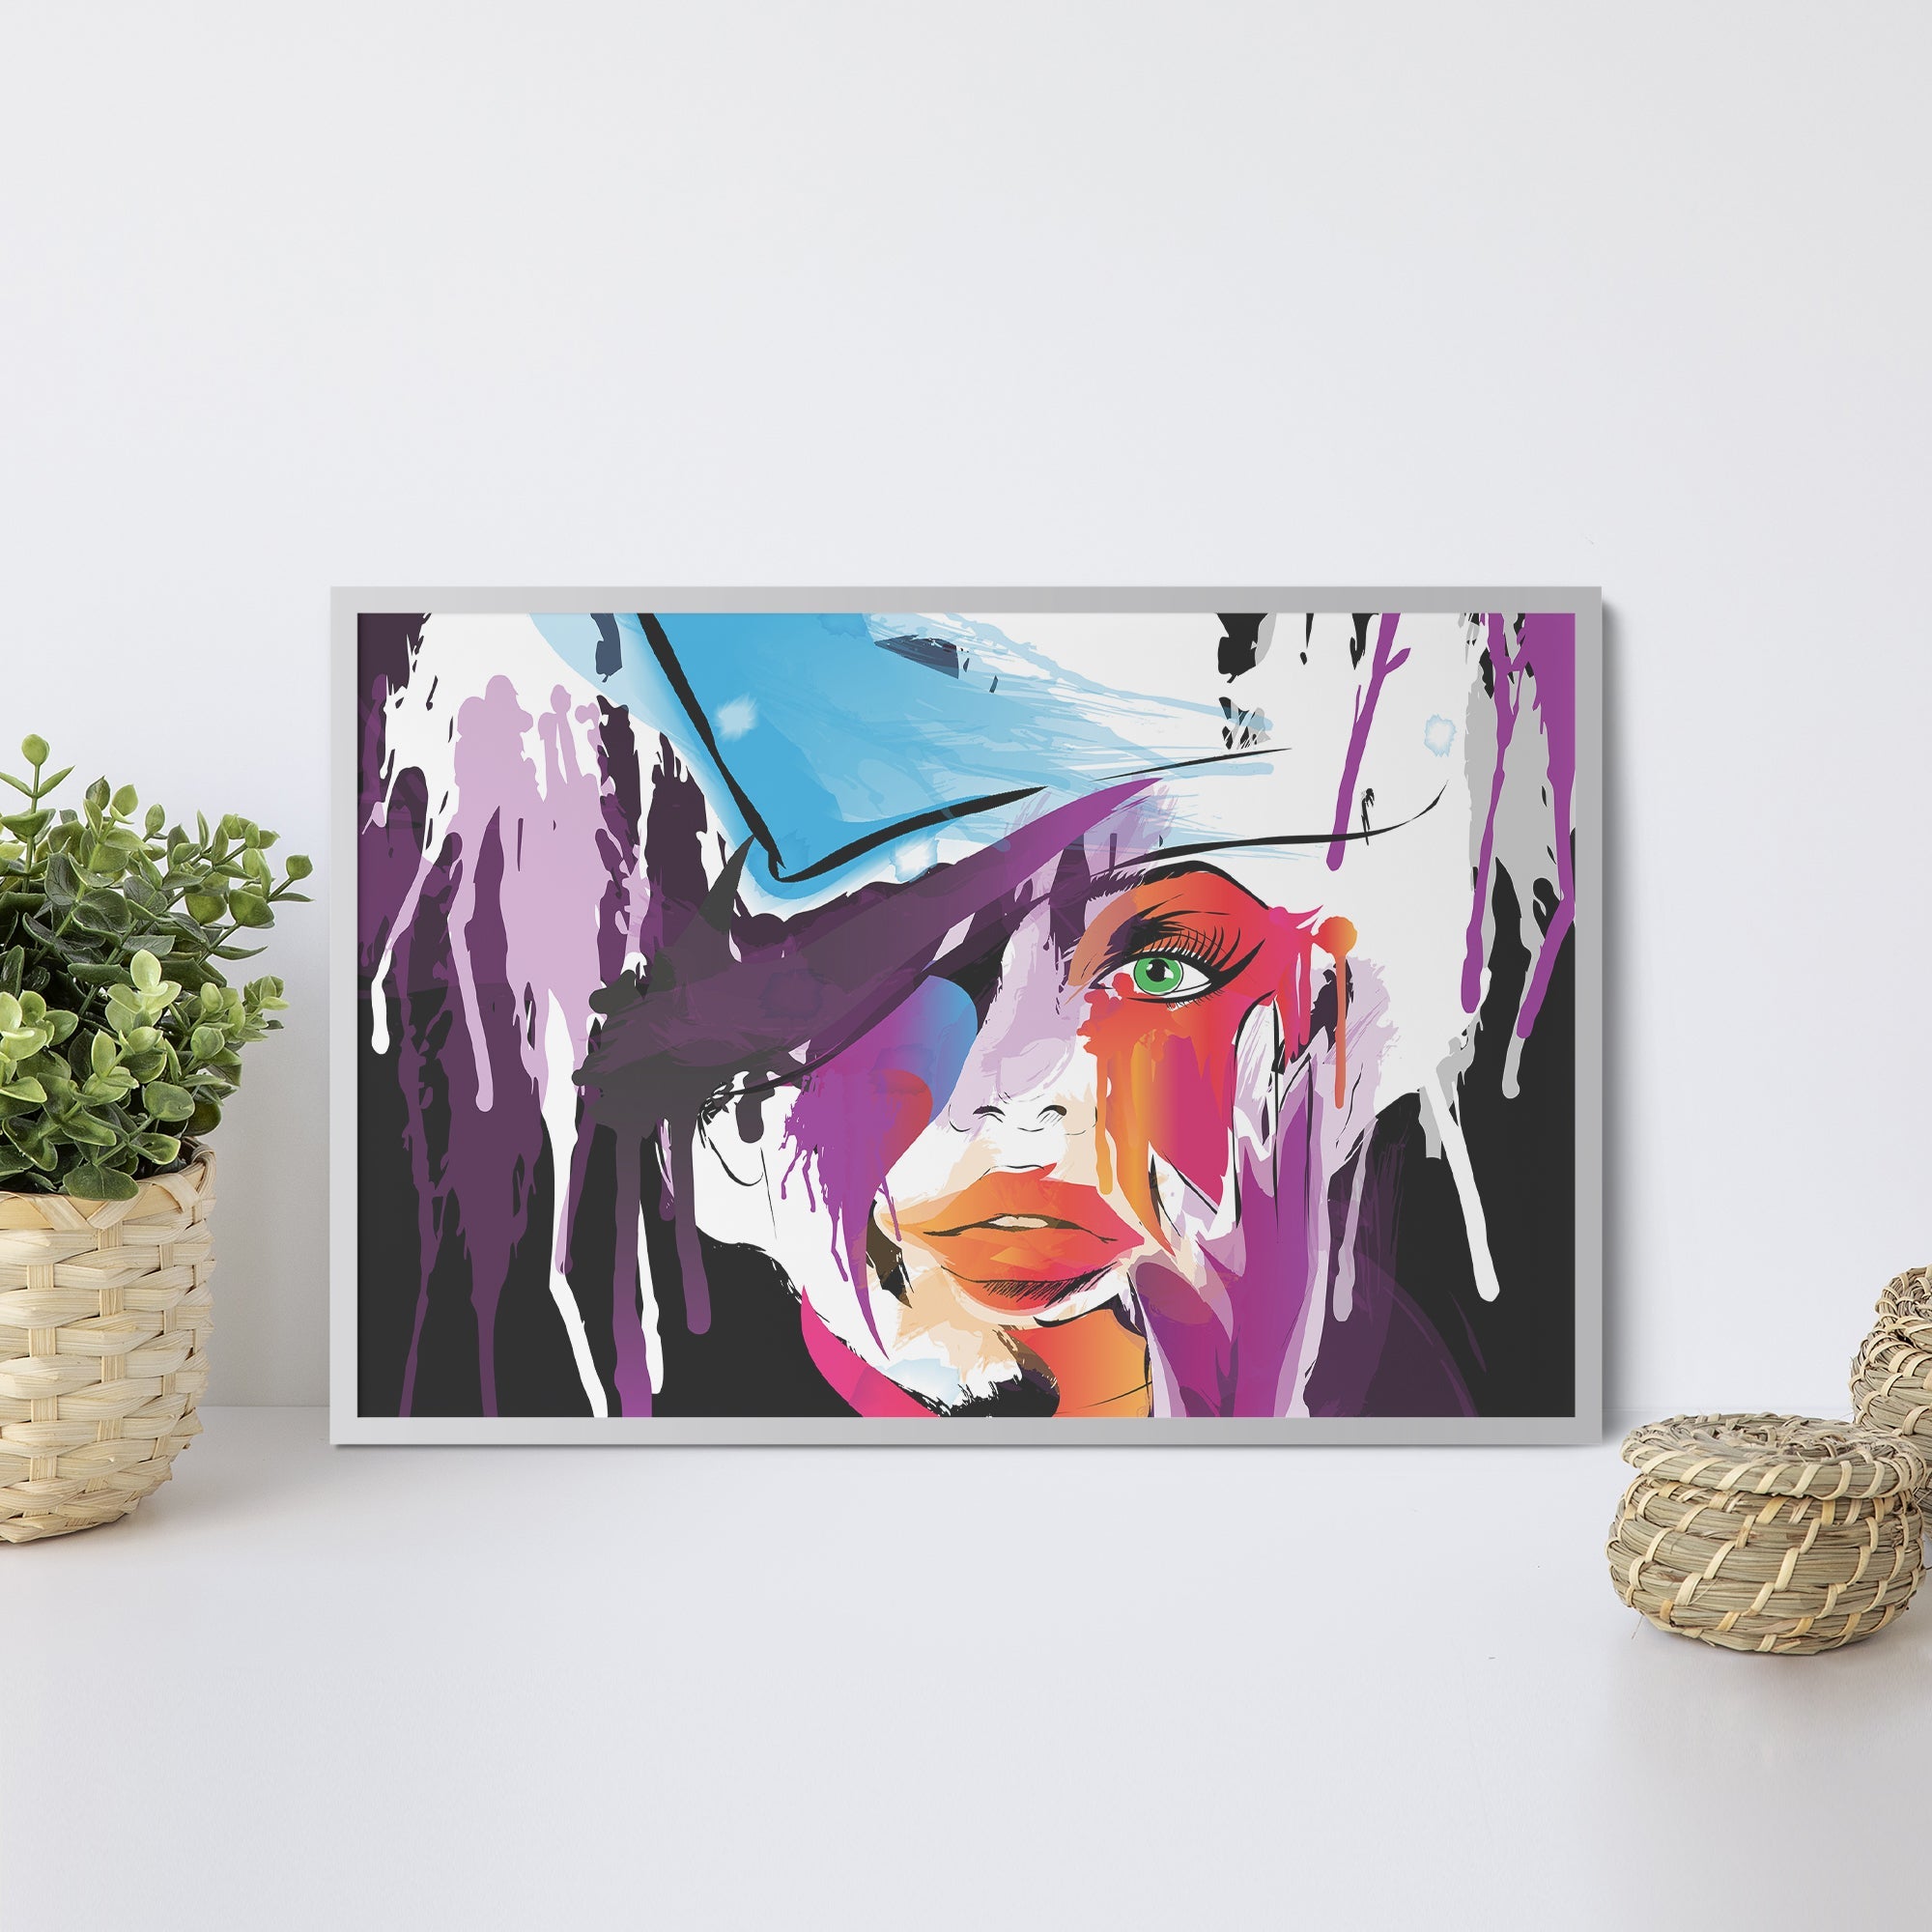 Foto obraz w ramie - Grafika, kobieta w kolorach (abstrakcyjny) - Gallart.pl